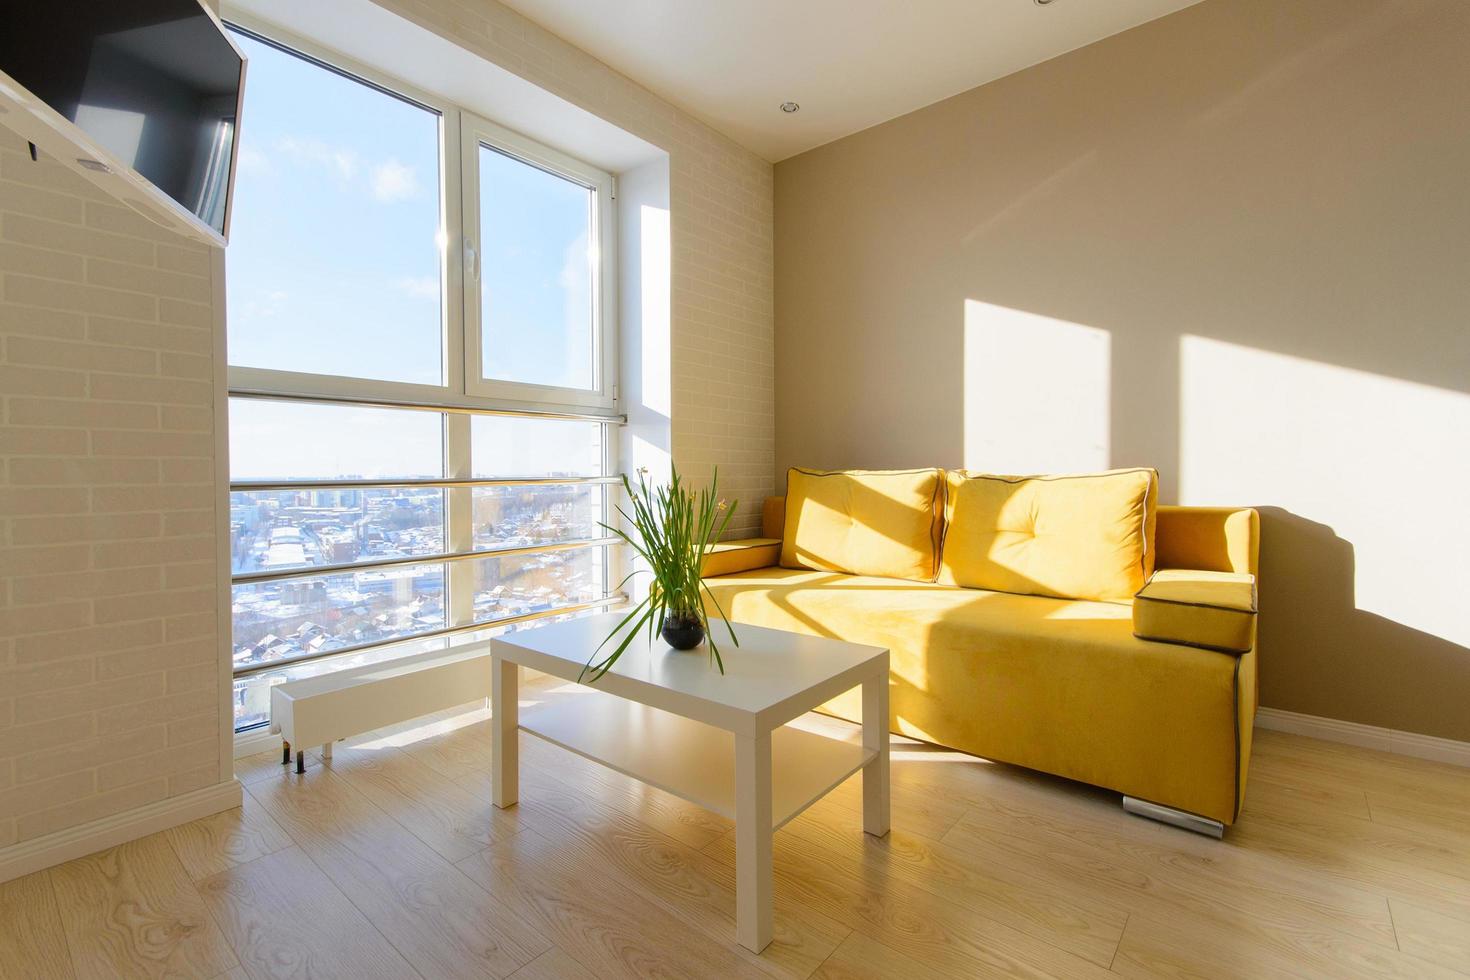 intérieur d'appartement confortable et moderne, salon avec canapé jaune, table basse blanche et télévision murale, fenêtre panoramique avec belle vue sur la ville. photo